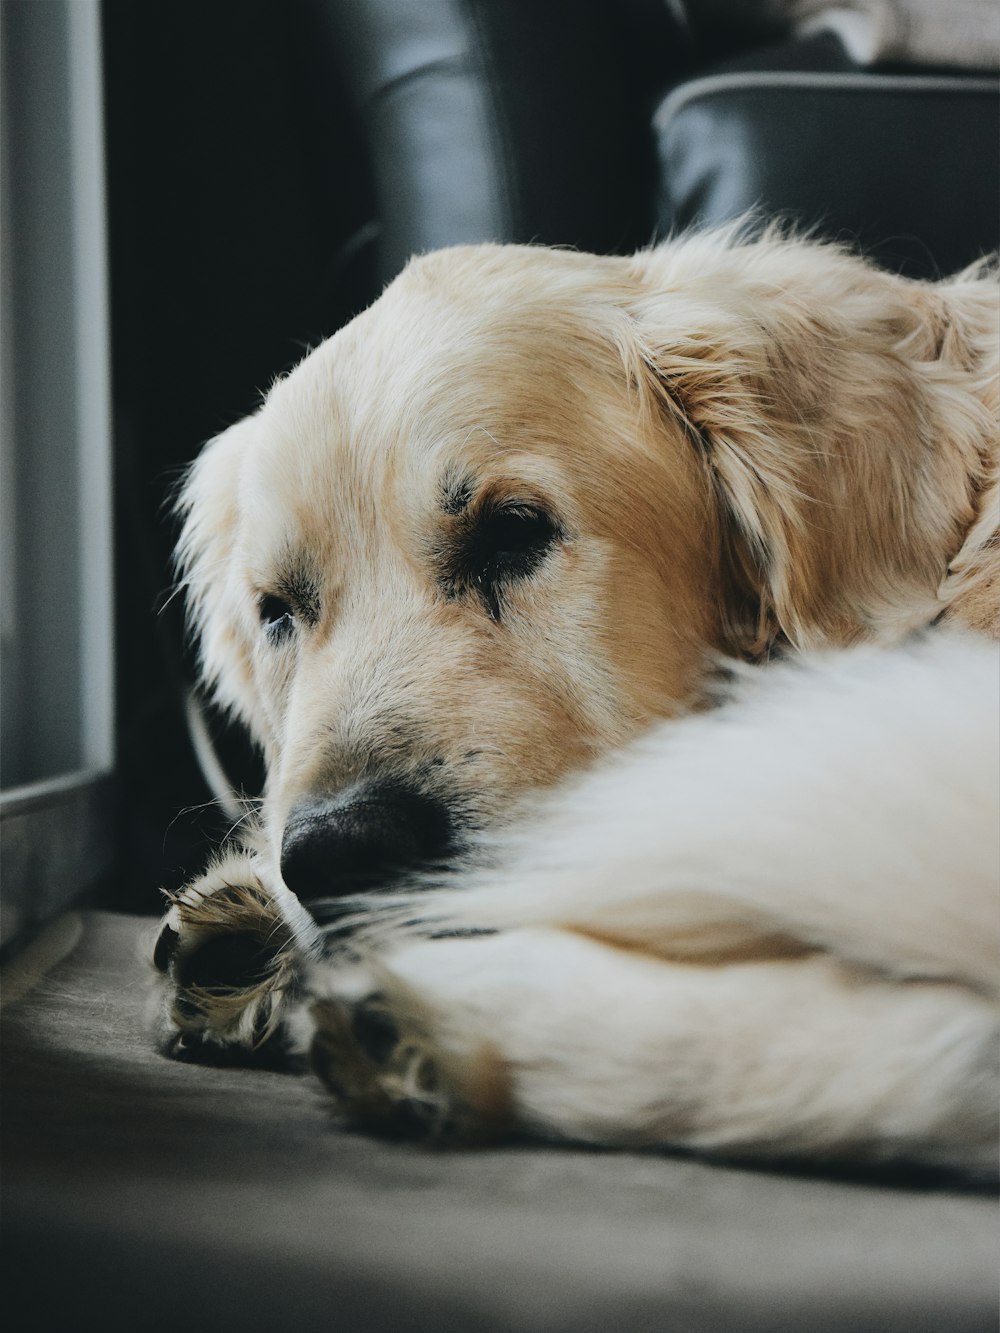 Photographie sélective de la mise au point d’un chien brun couché sur une surface grise